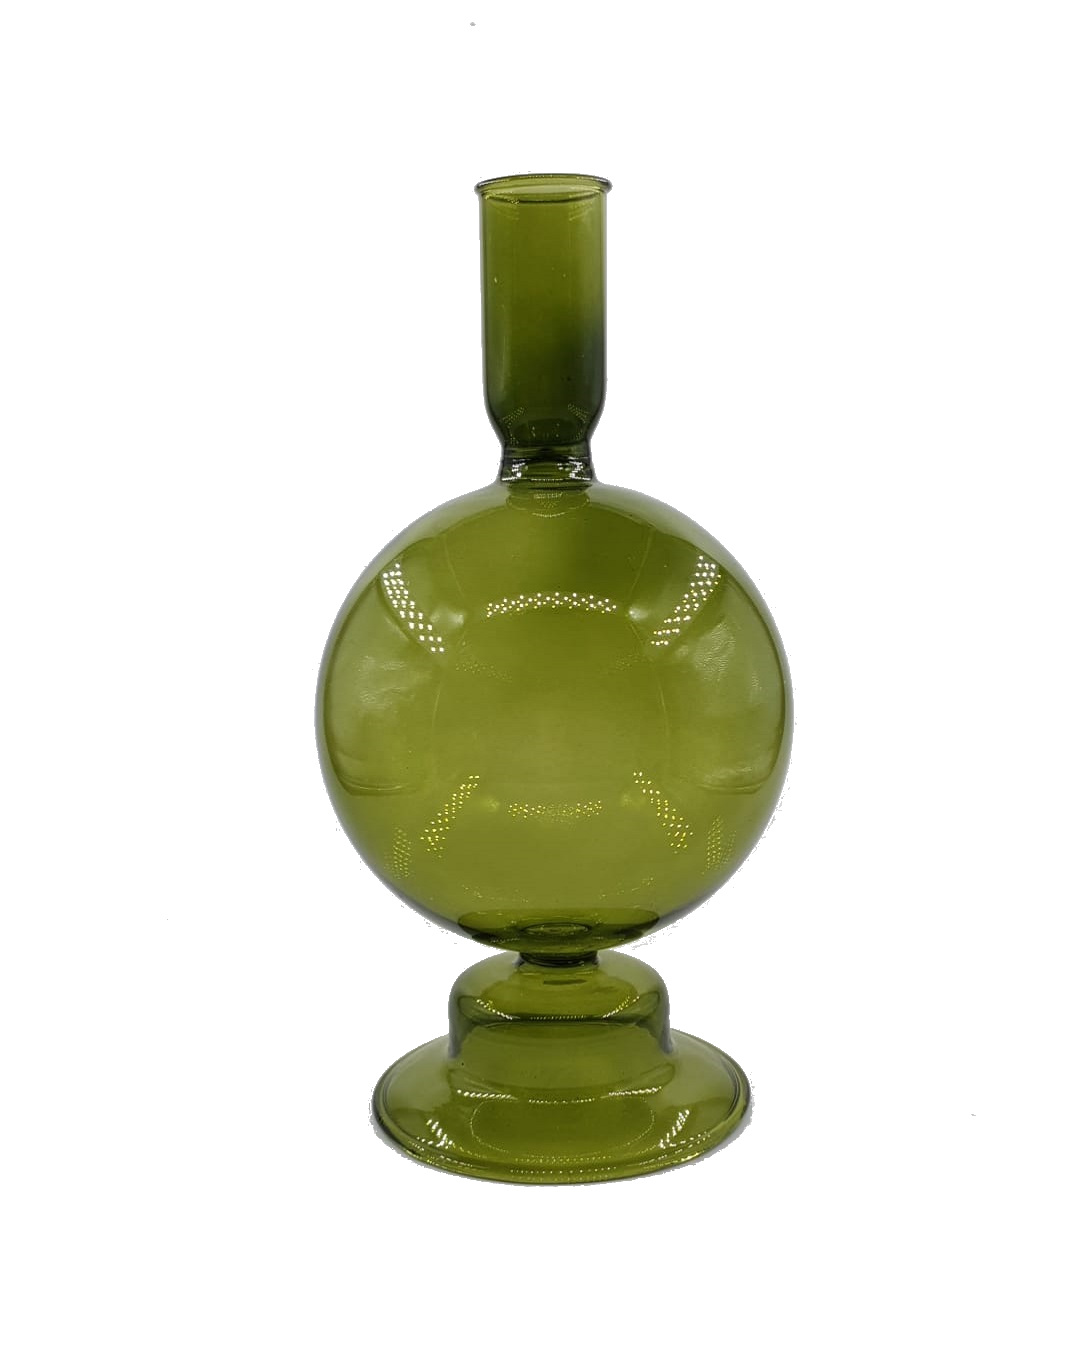 Green glass candlestick holder